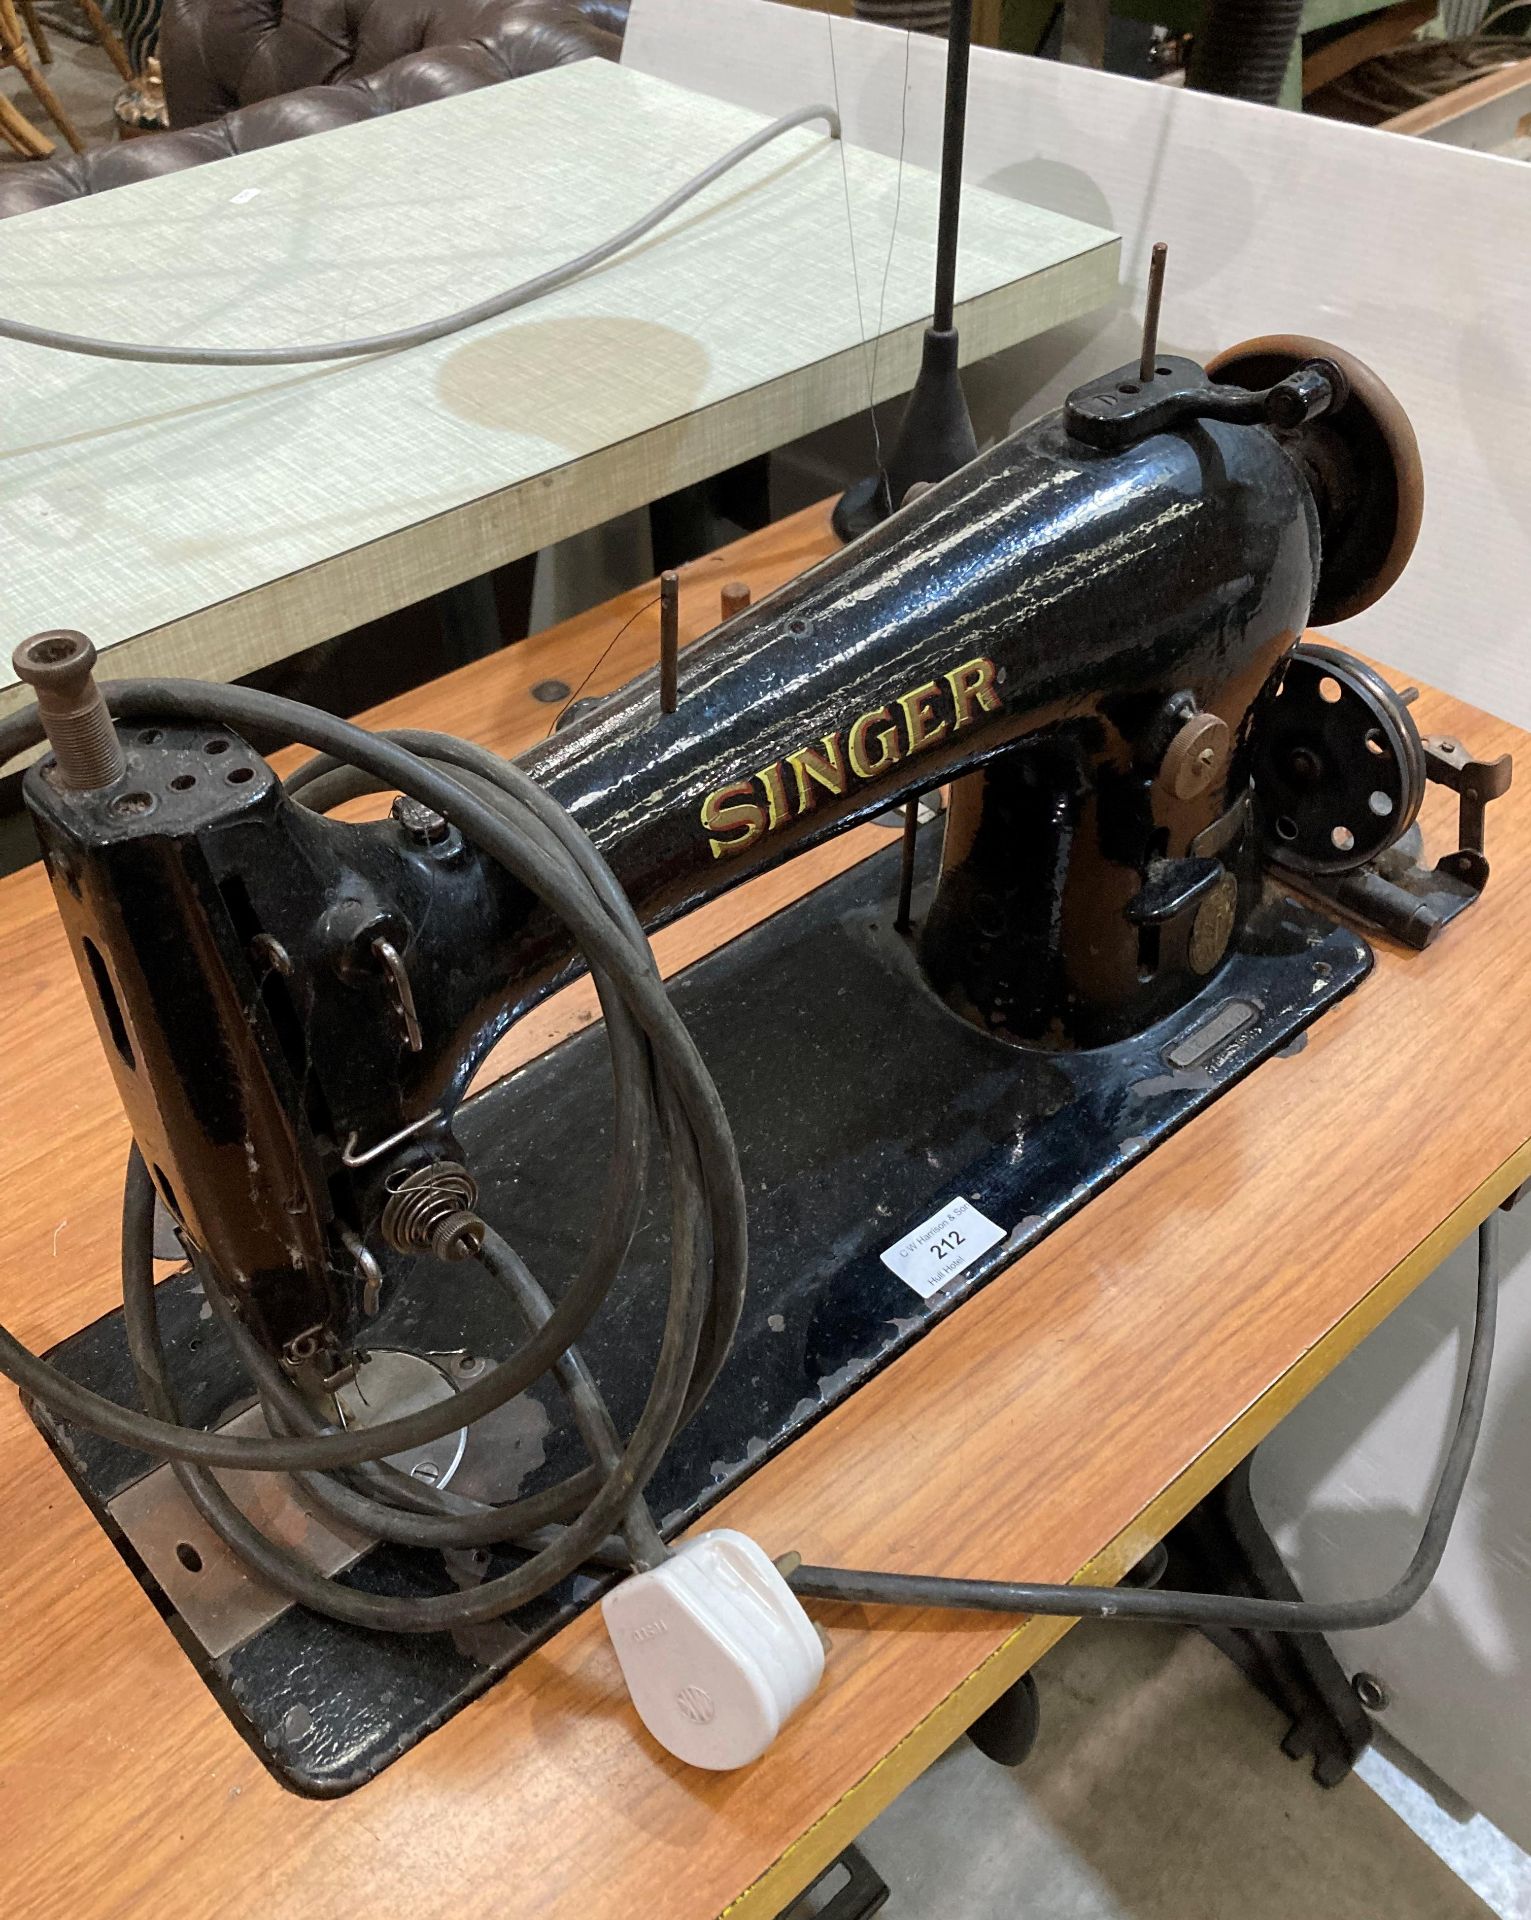 Singer 96KSV7 electric sewing machine (240v - no test, - Image 2 of 3